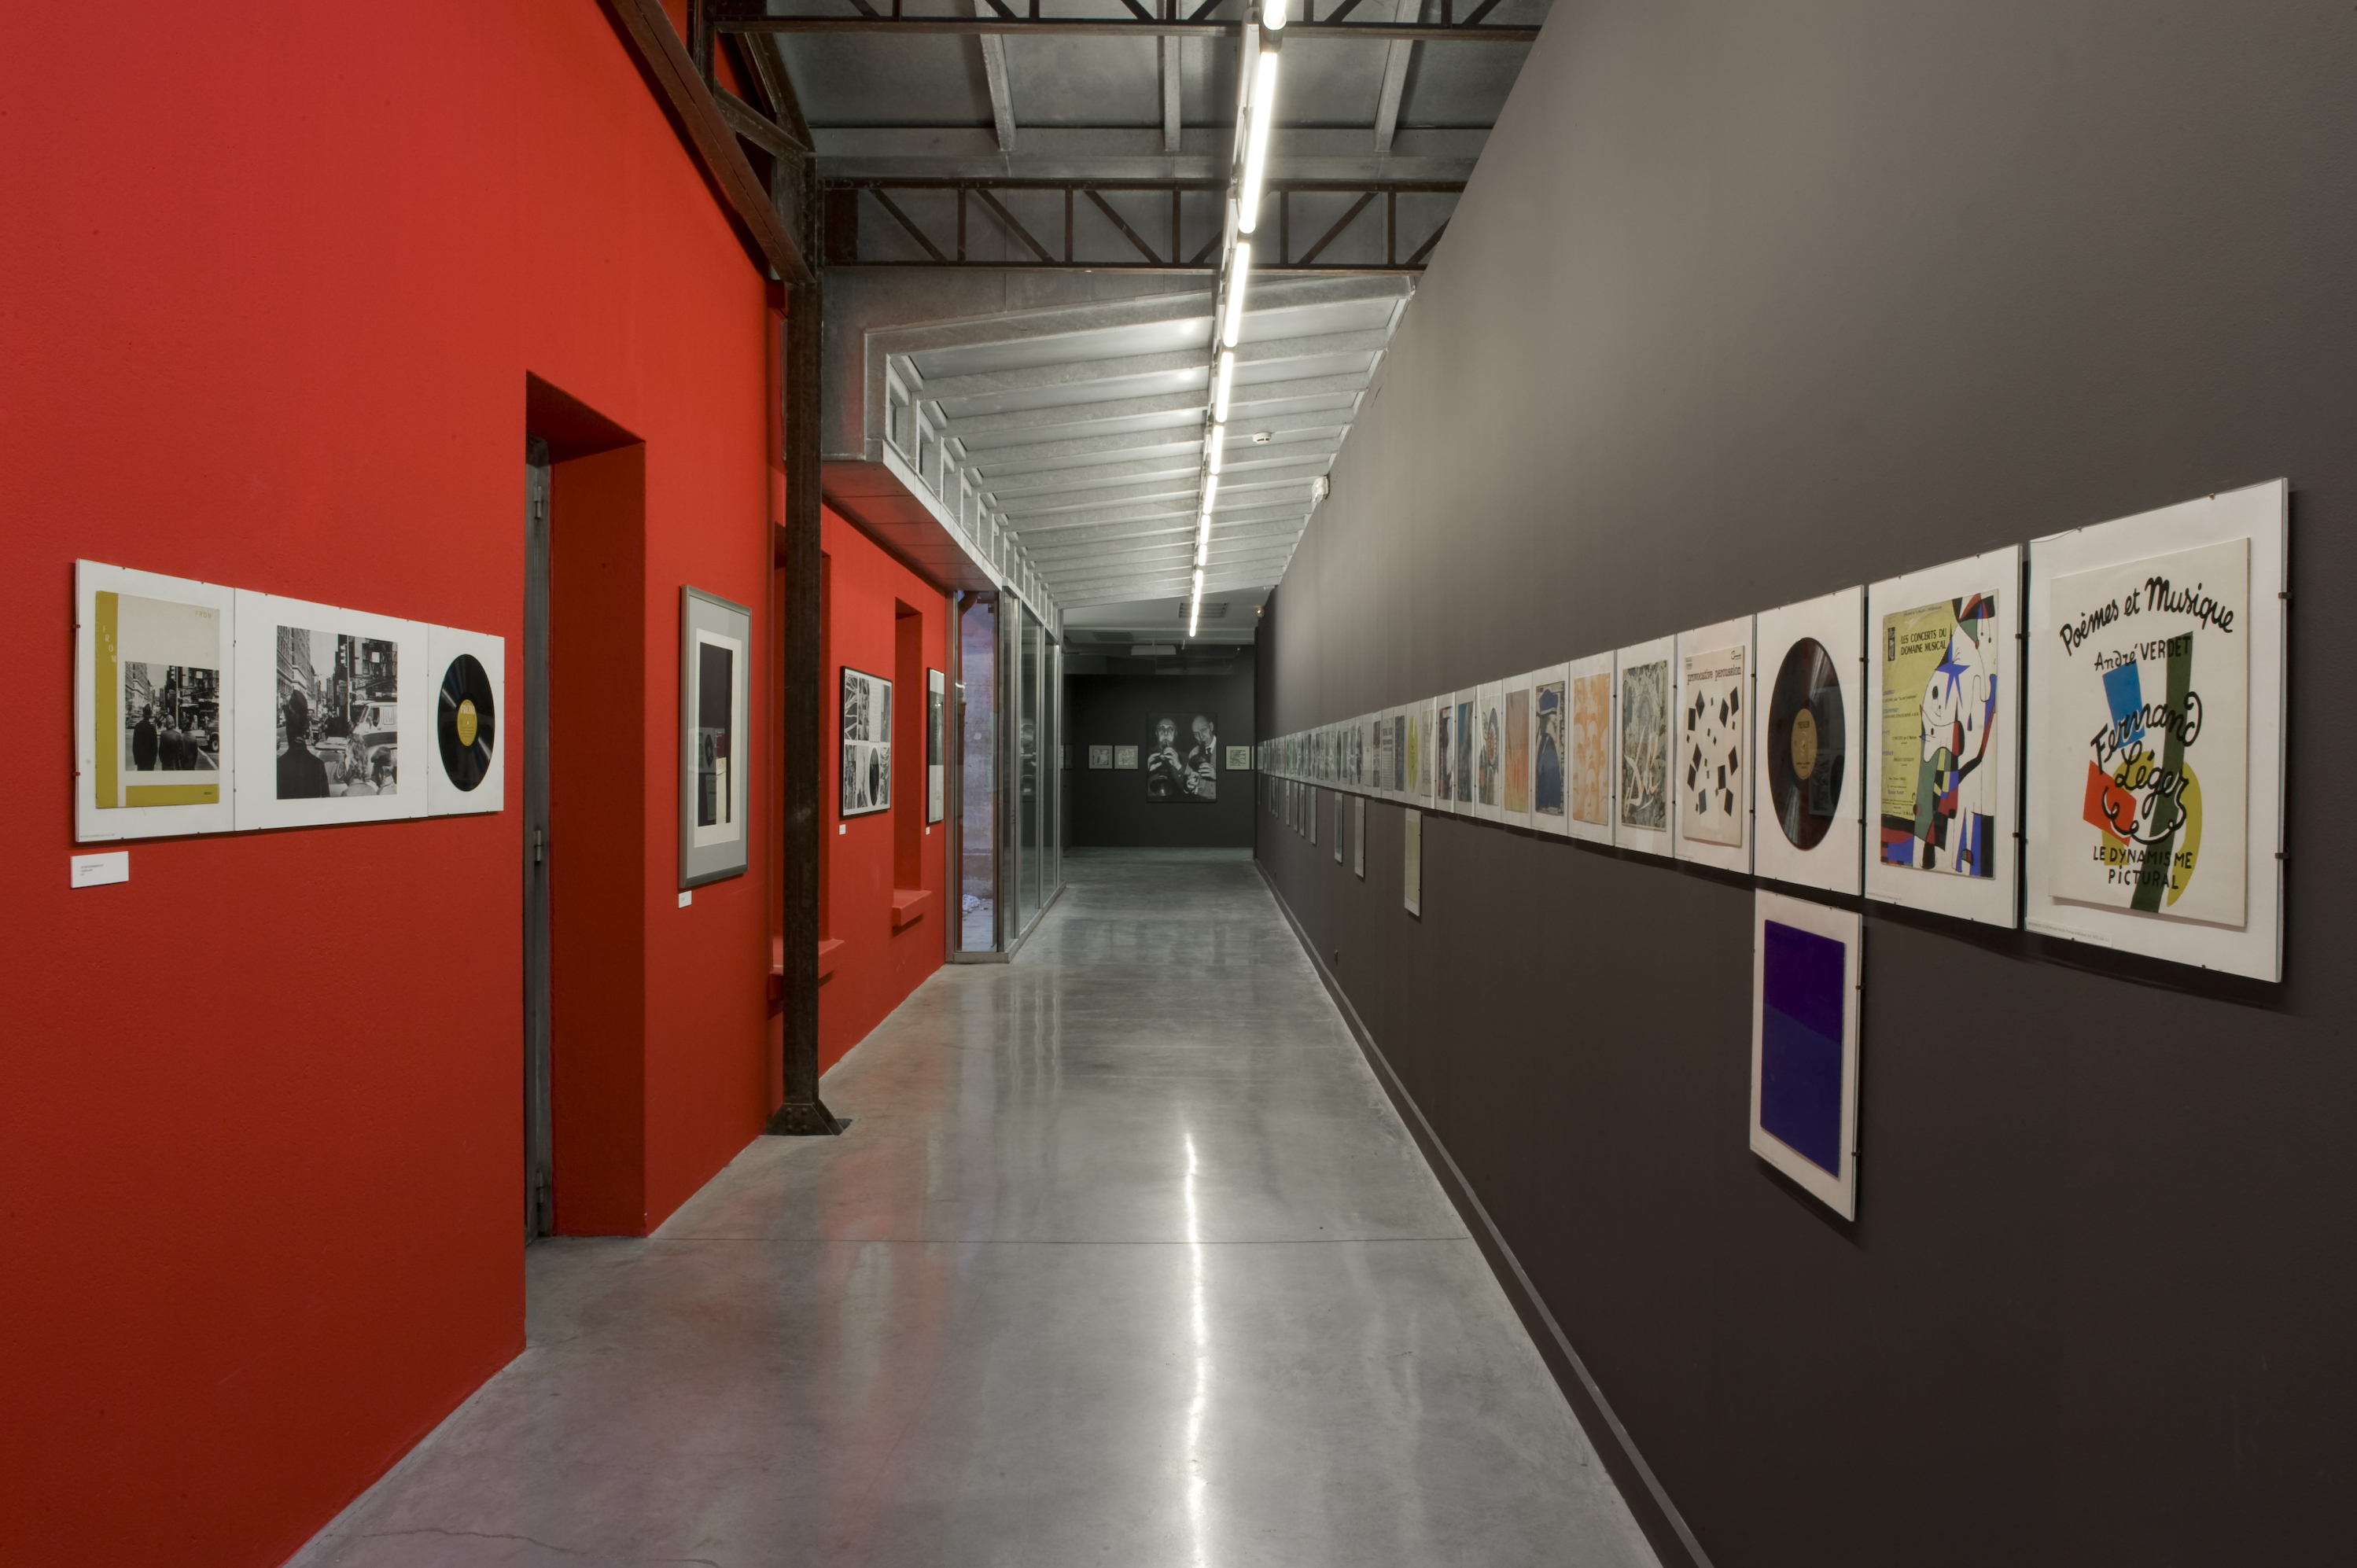 Vue de l'exposition Vinyl, disques et pochettes d'artistes - collection de Guy Schraenen © Marc Domage / la maison rouge, 2010